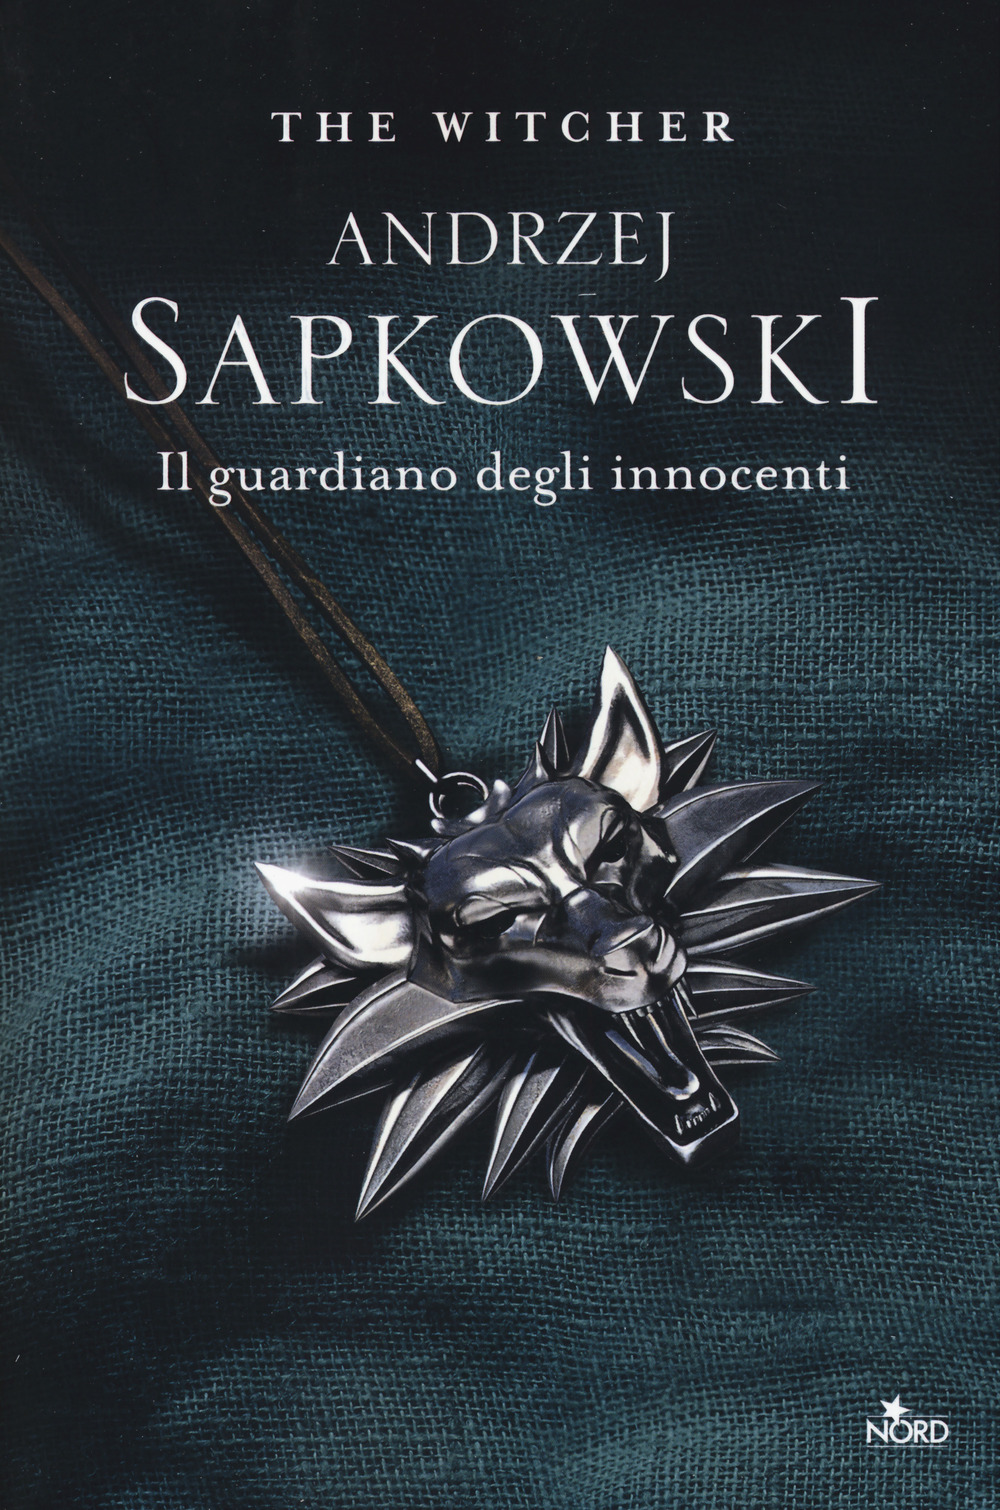 Libri Andrzej Sapkowski - Il Guardiano Degli Innocenti. The Witcher Vol 01 NUOVO SIGILLATO, EDIZIONE DEL 24/10/2019 SUBITO DISPONIBILE